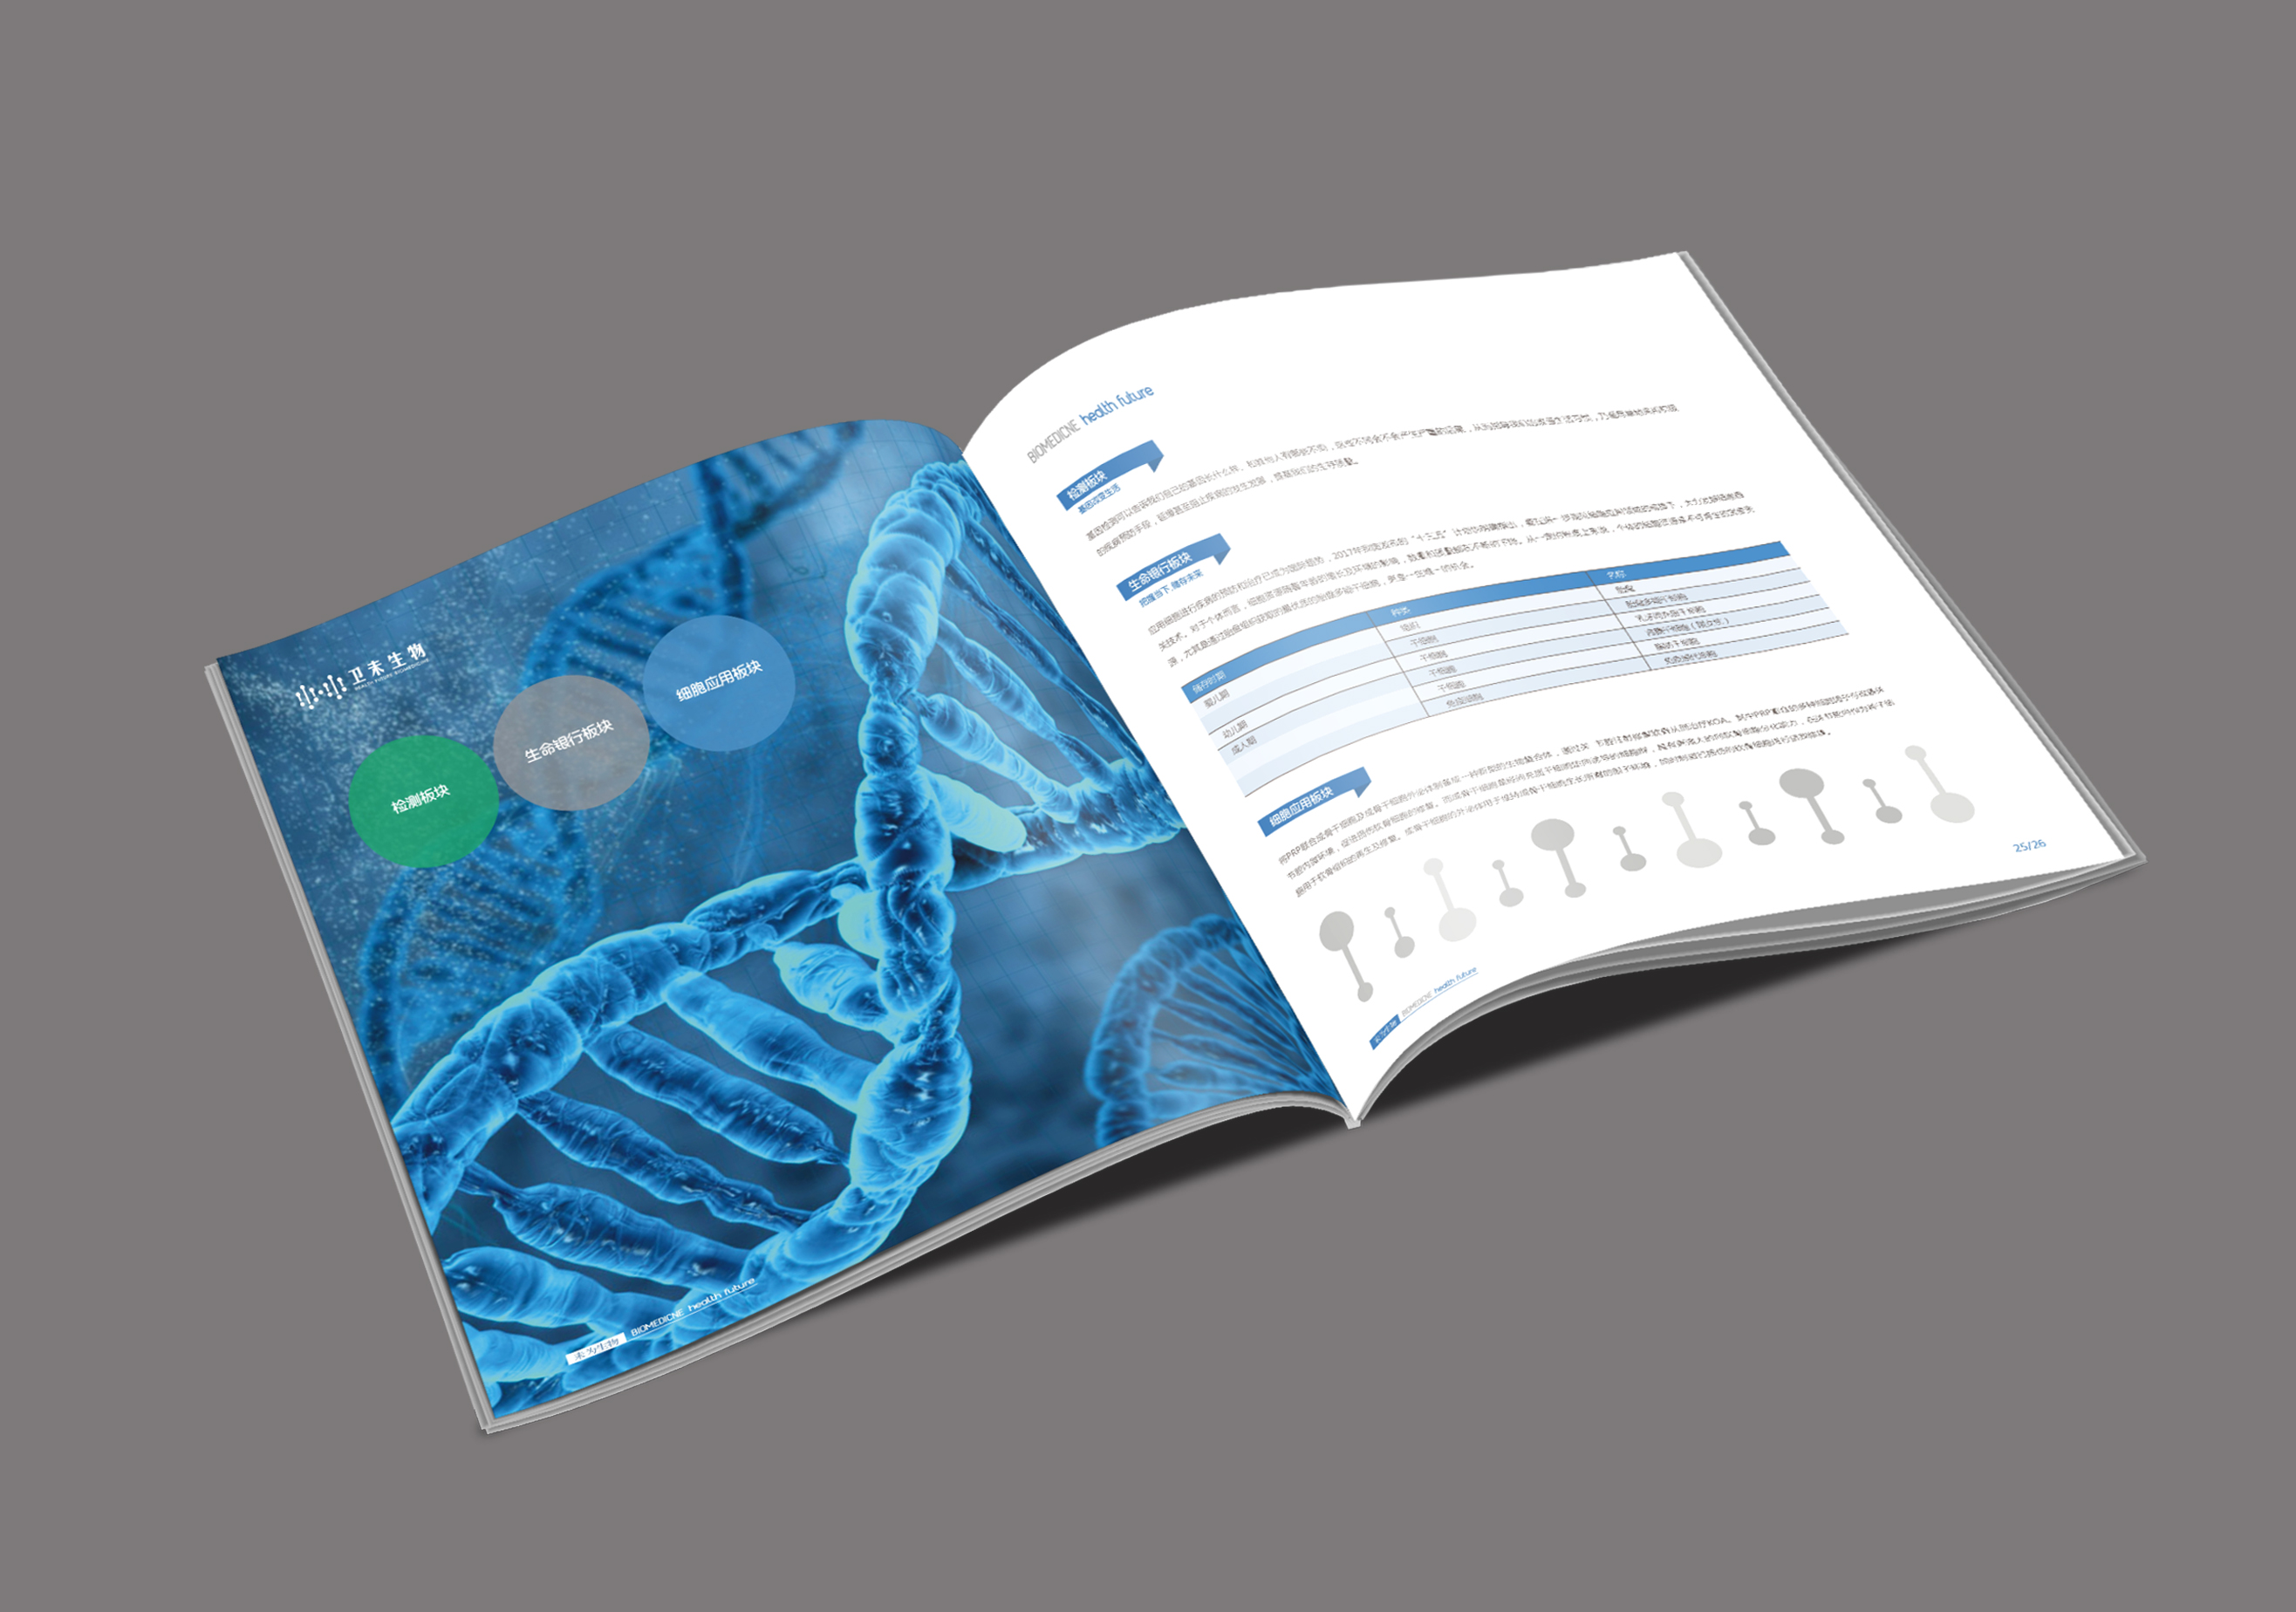 分享收藏医药生物科技对折设计税务财务画册设计能源金融画册设计金融